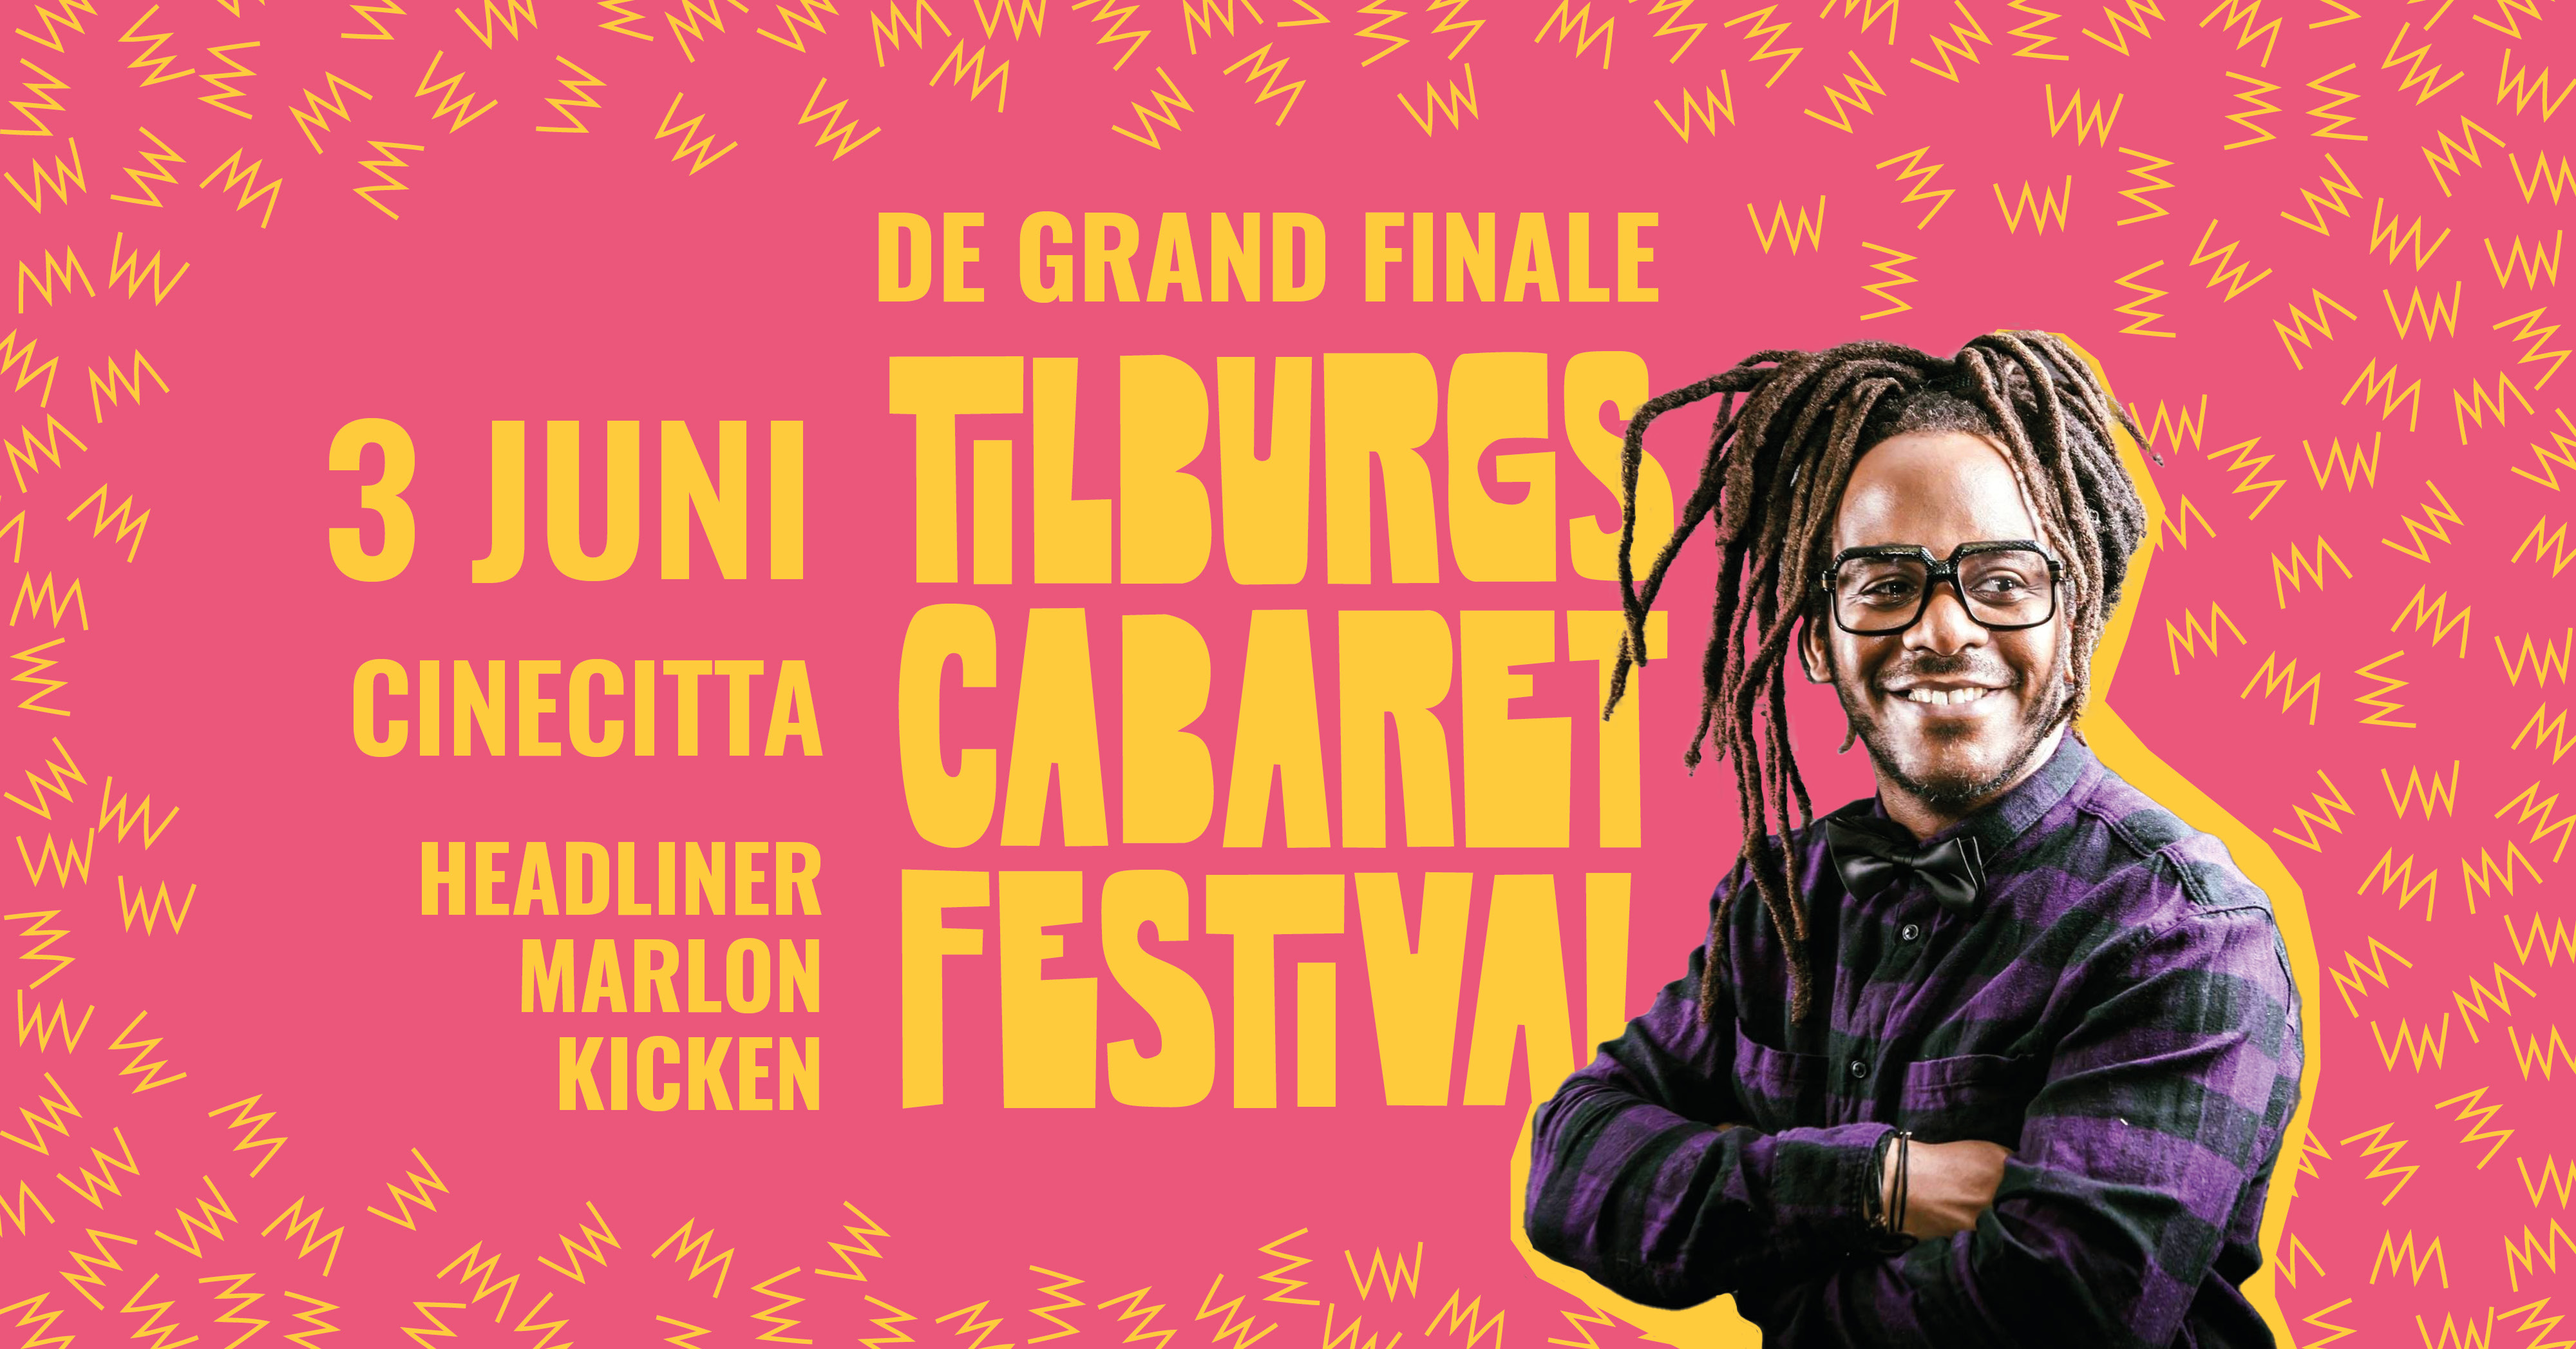 Ticket kopen voor evenement Tilburgs Cabaret Festival FINALE